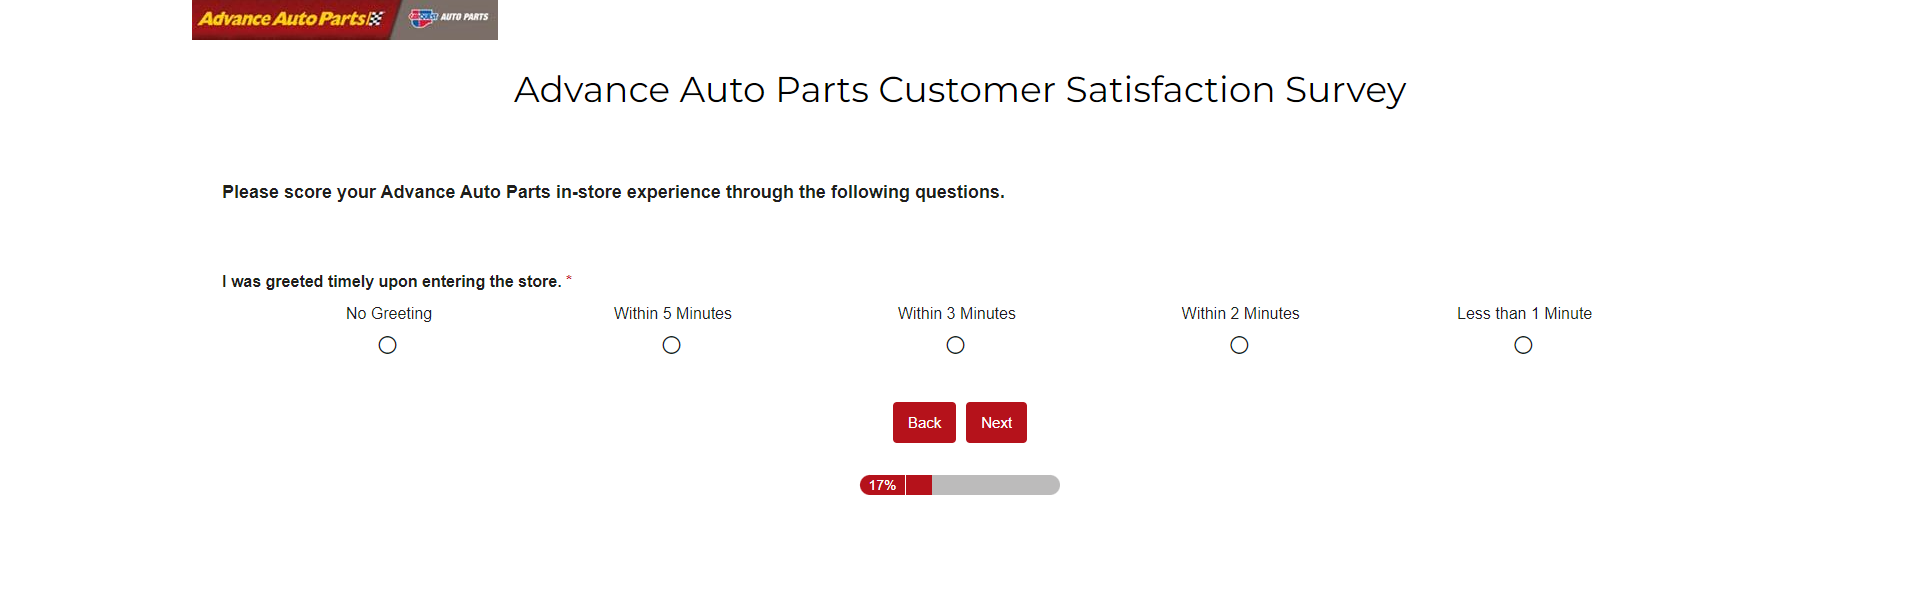 advanced auto parts survey